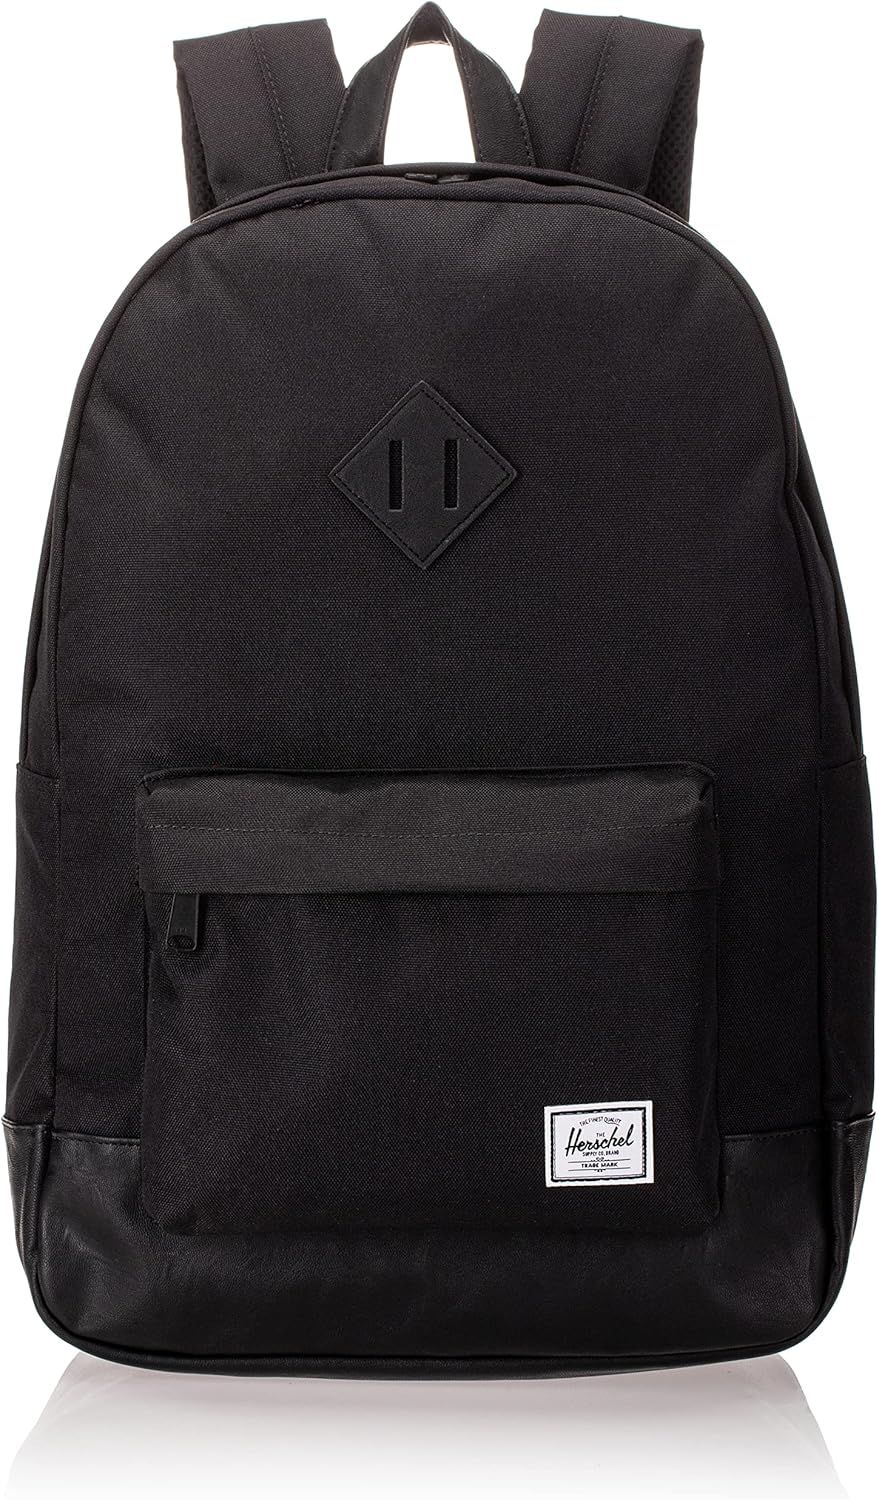 Herschel Heritage Backpack, Black/Black, Classic 21.5L | Amazon (US)